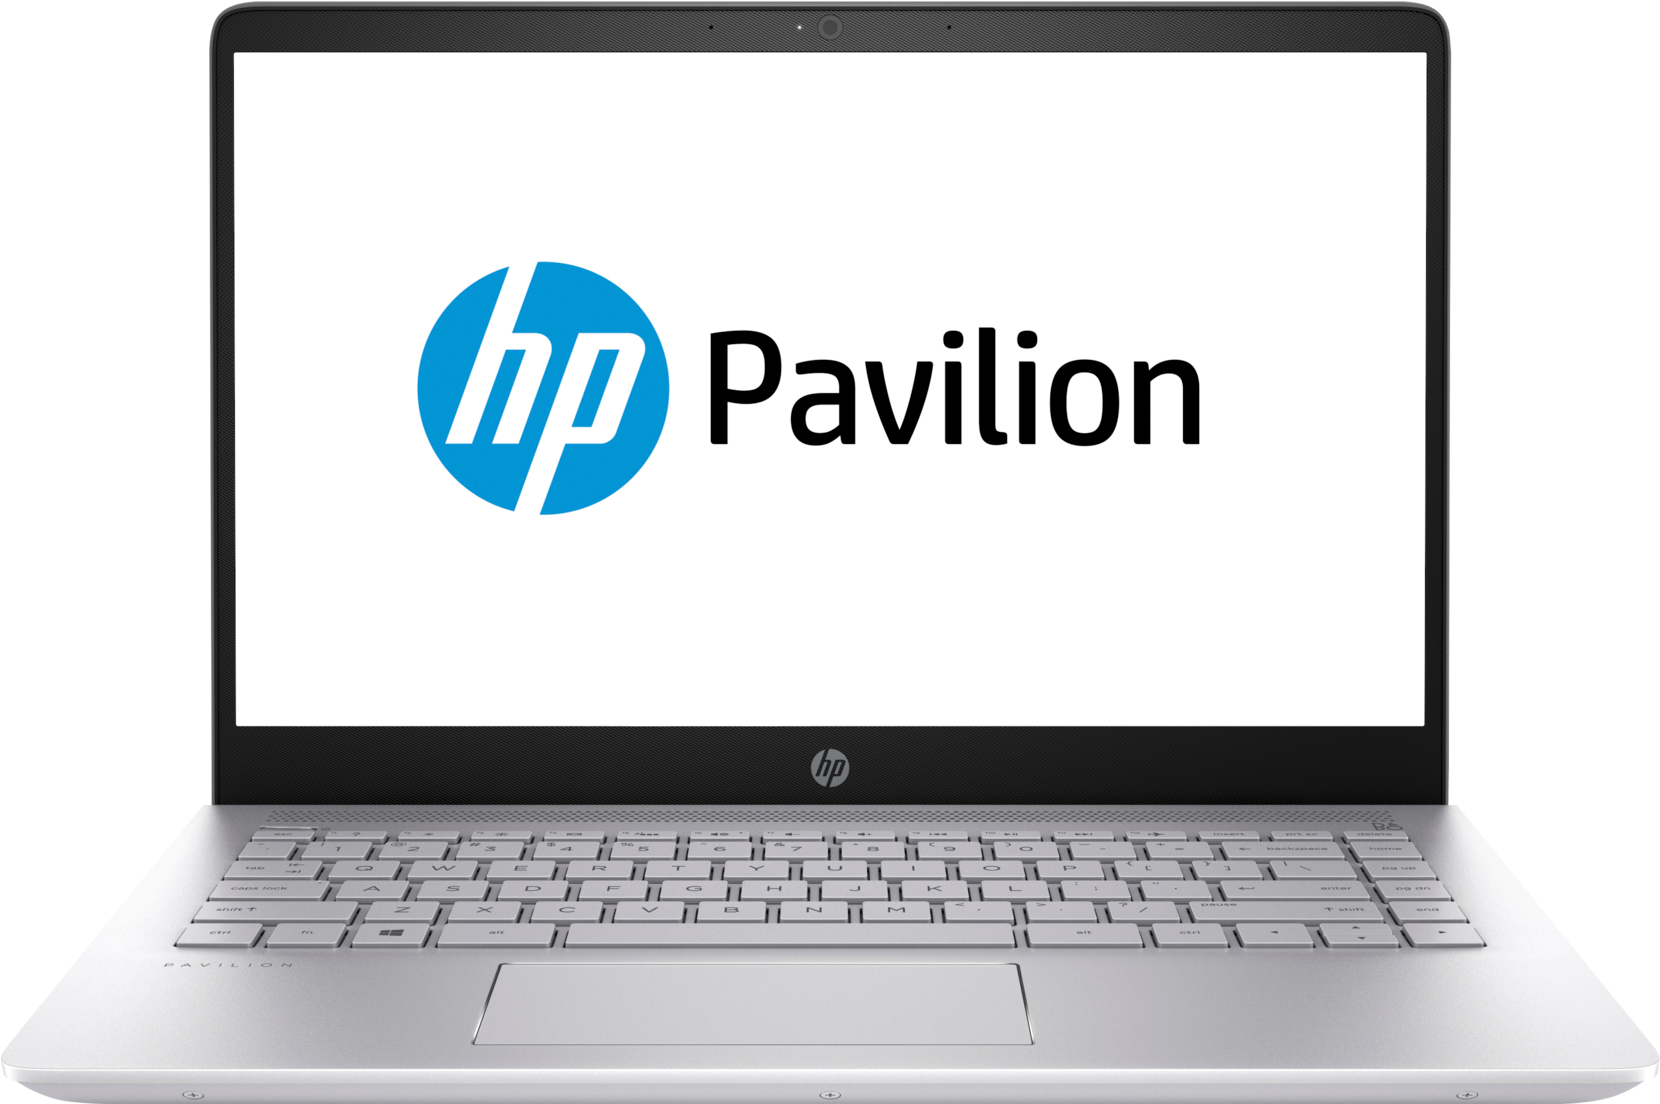 H P Pavilion Laptop Display PNG